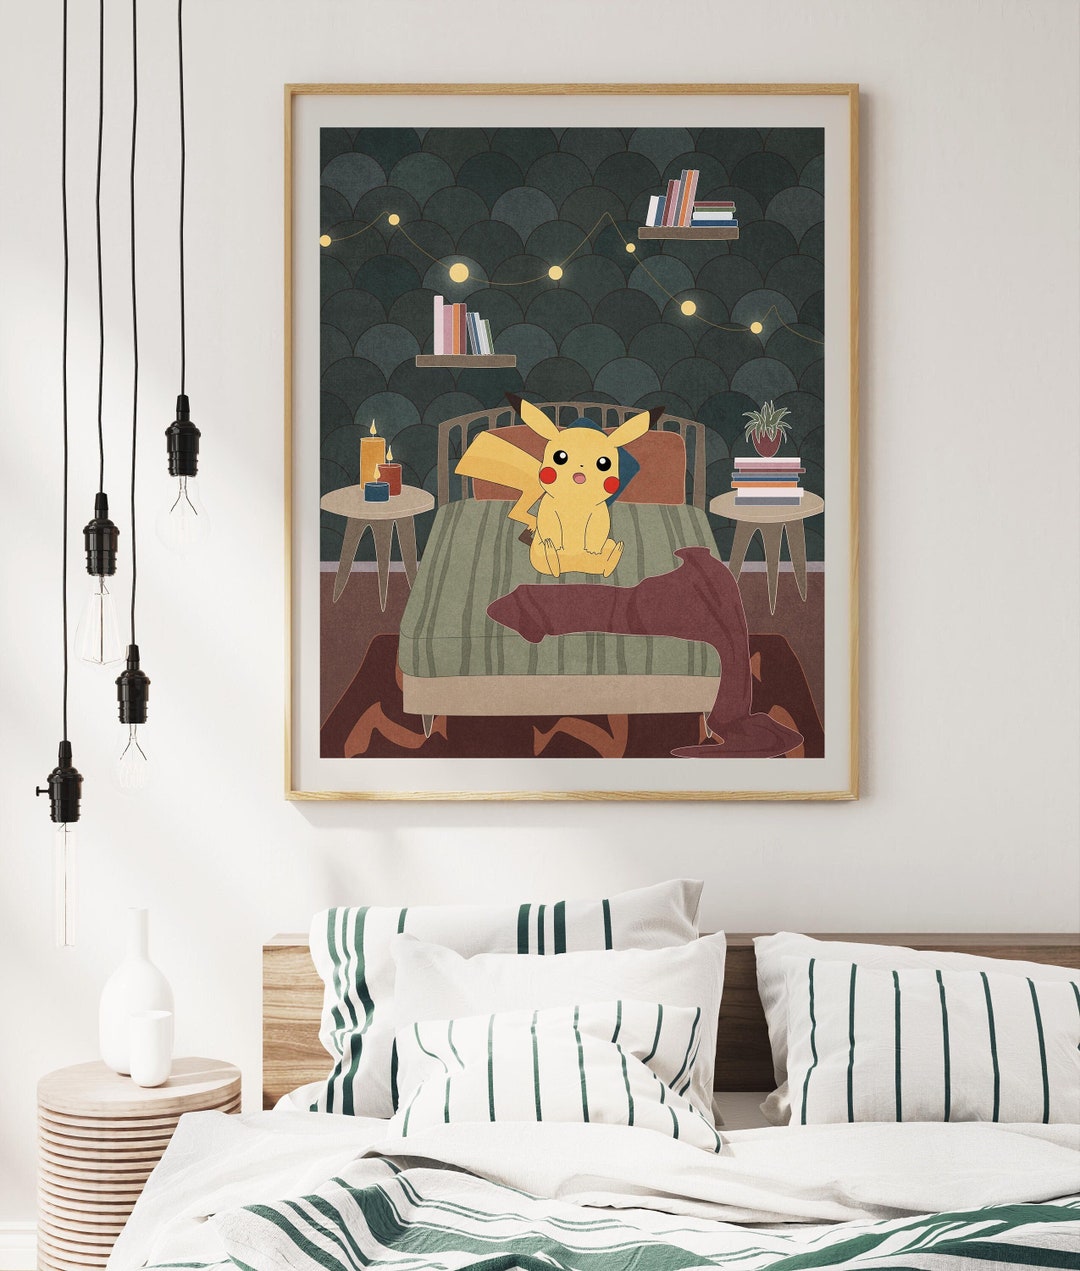 Surprised Pikachu Art Print, Bedroom Decor, Pikachu Pokemon Wall Decor,  Pokemon Wall Art, Pikachu Minimal Pokemon Poster, Bedroom Wall Art 